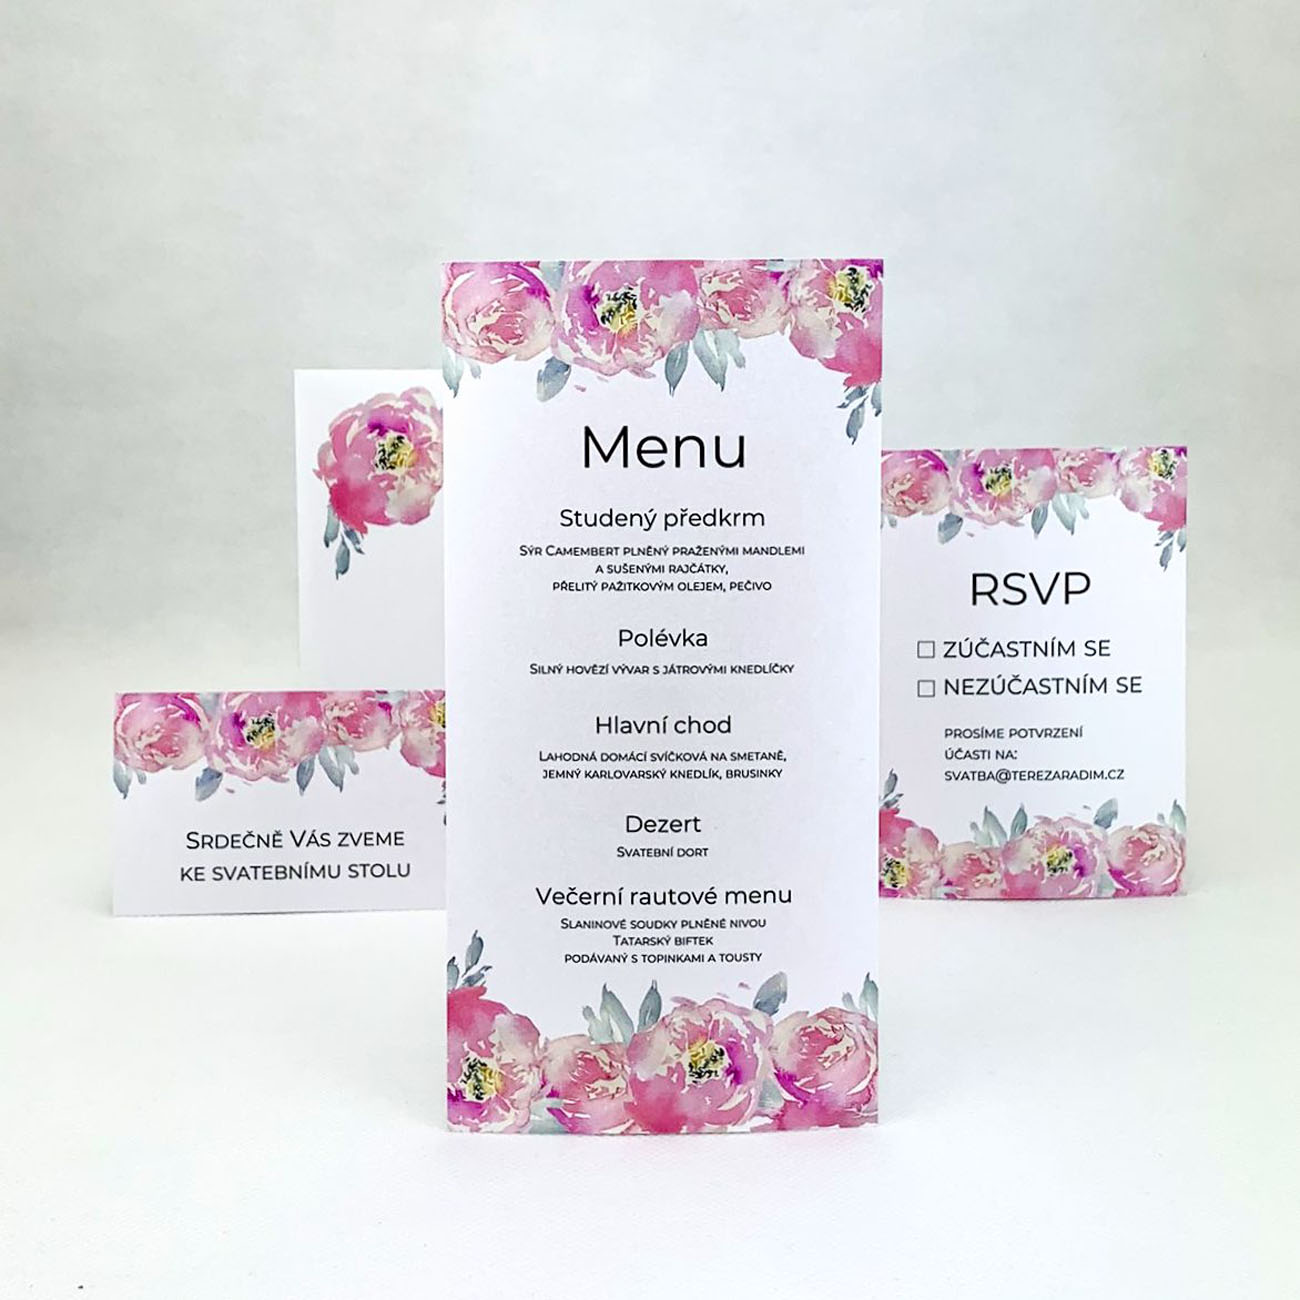 Svatební menu s květy pivoněk - M4002